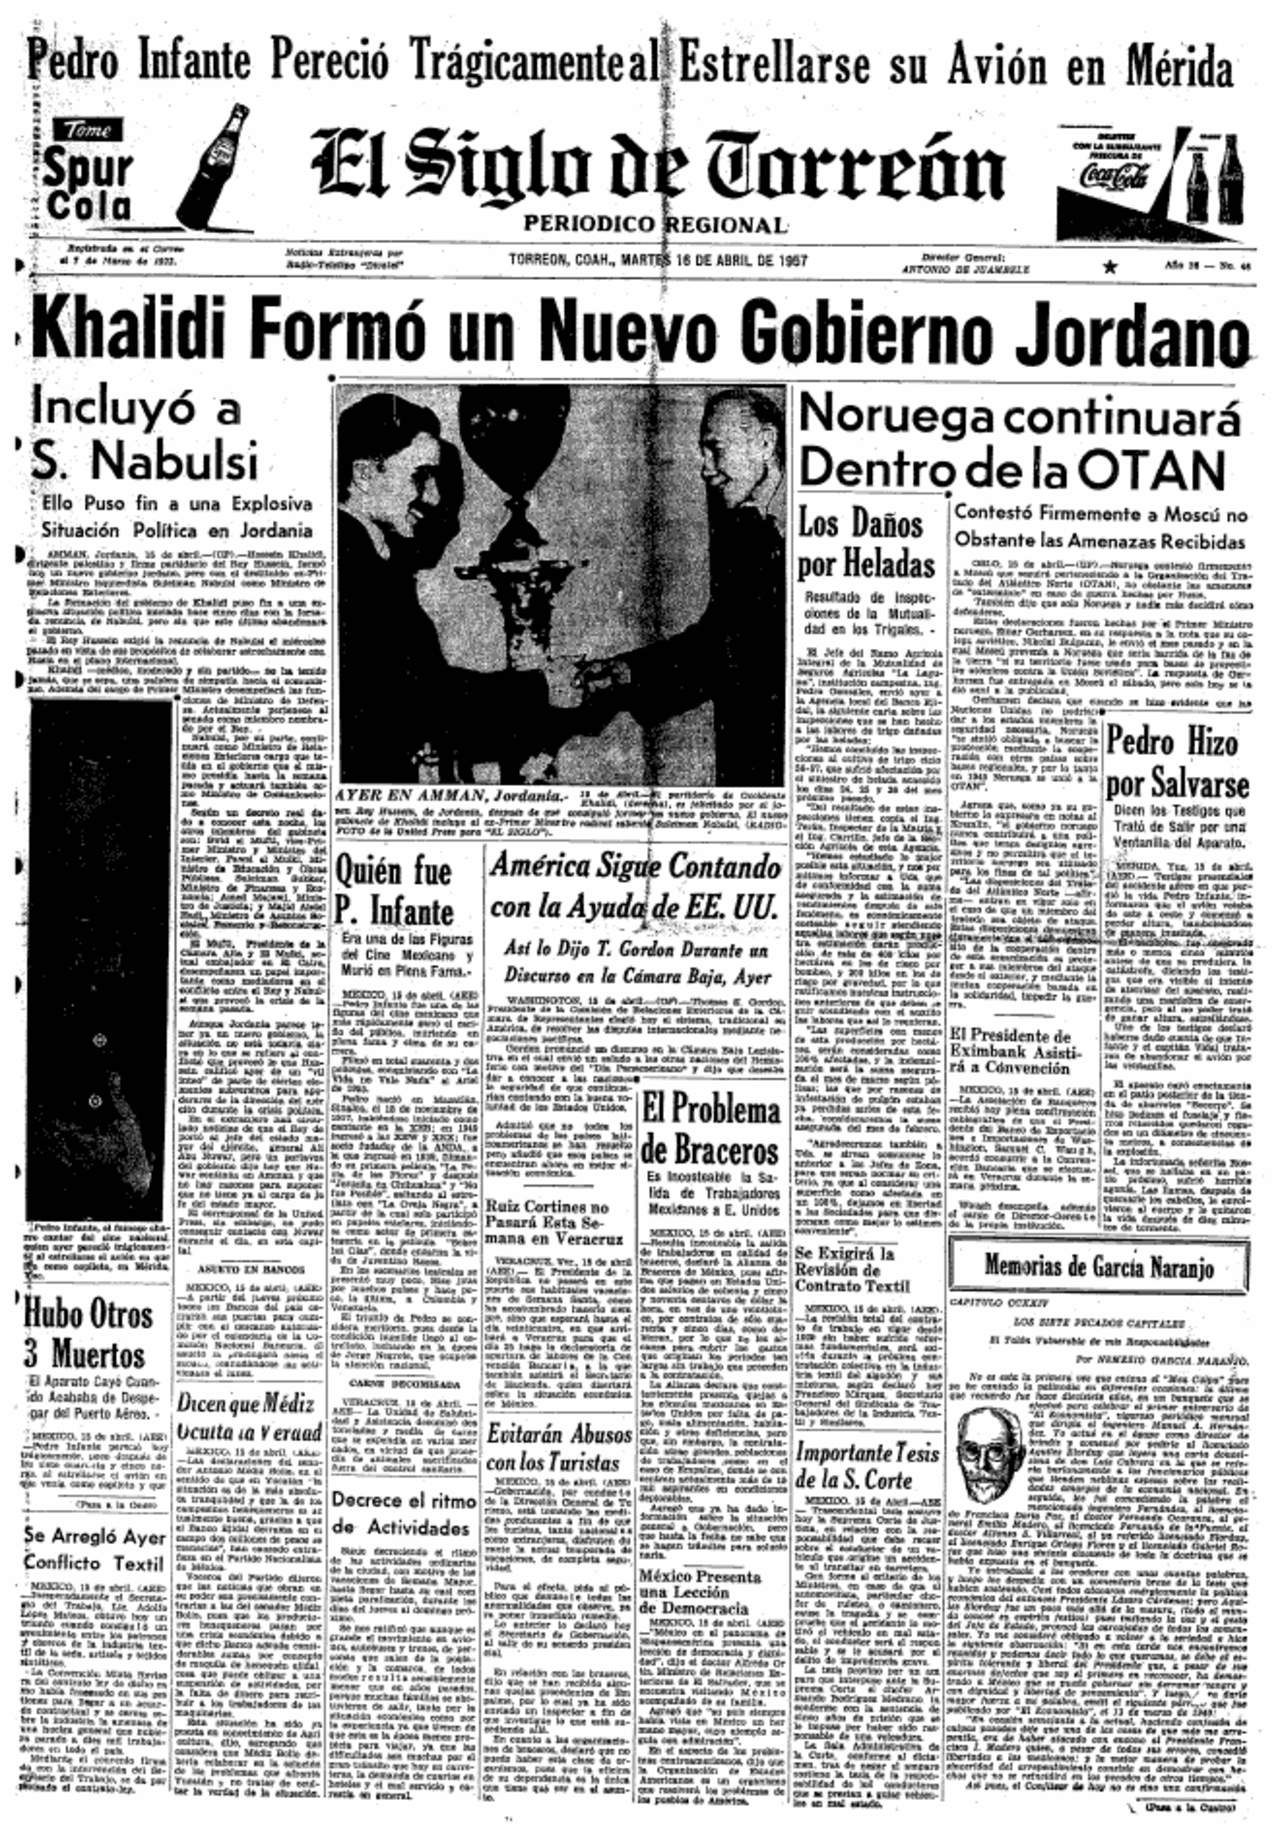 El Siglo de Torreón ofreció todos los detalles de la muerte de Pedro en su edición del martes 16 de abril de 1957.
